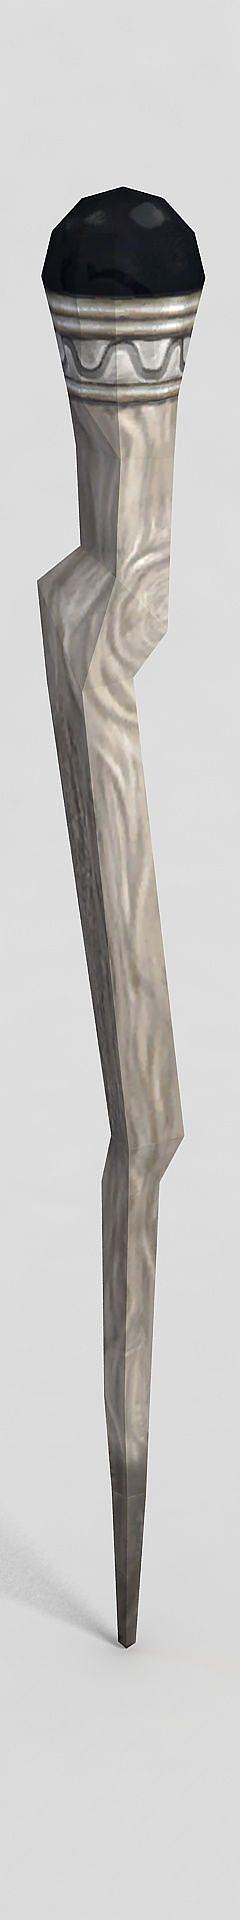 龙之谷游戏武器权杖3D模型